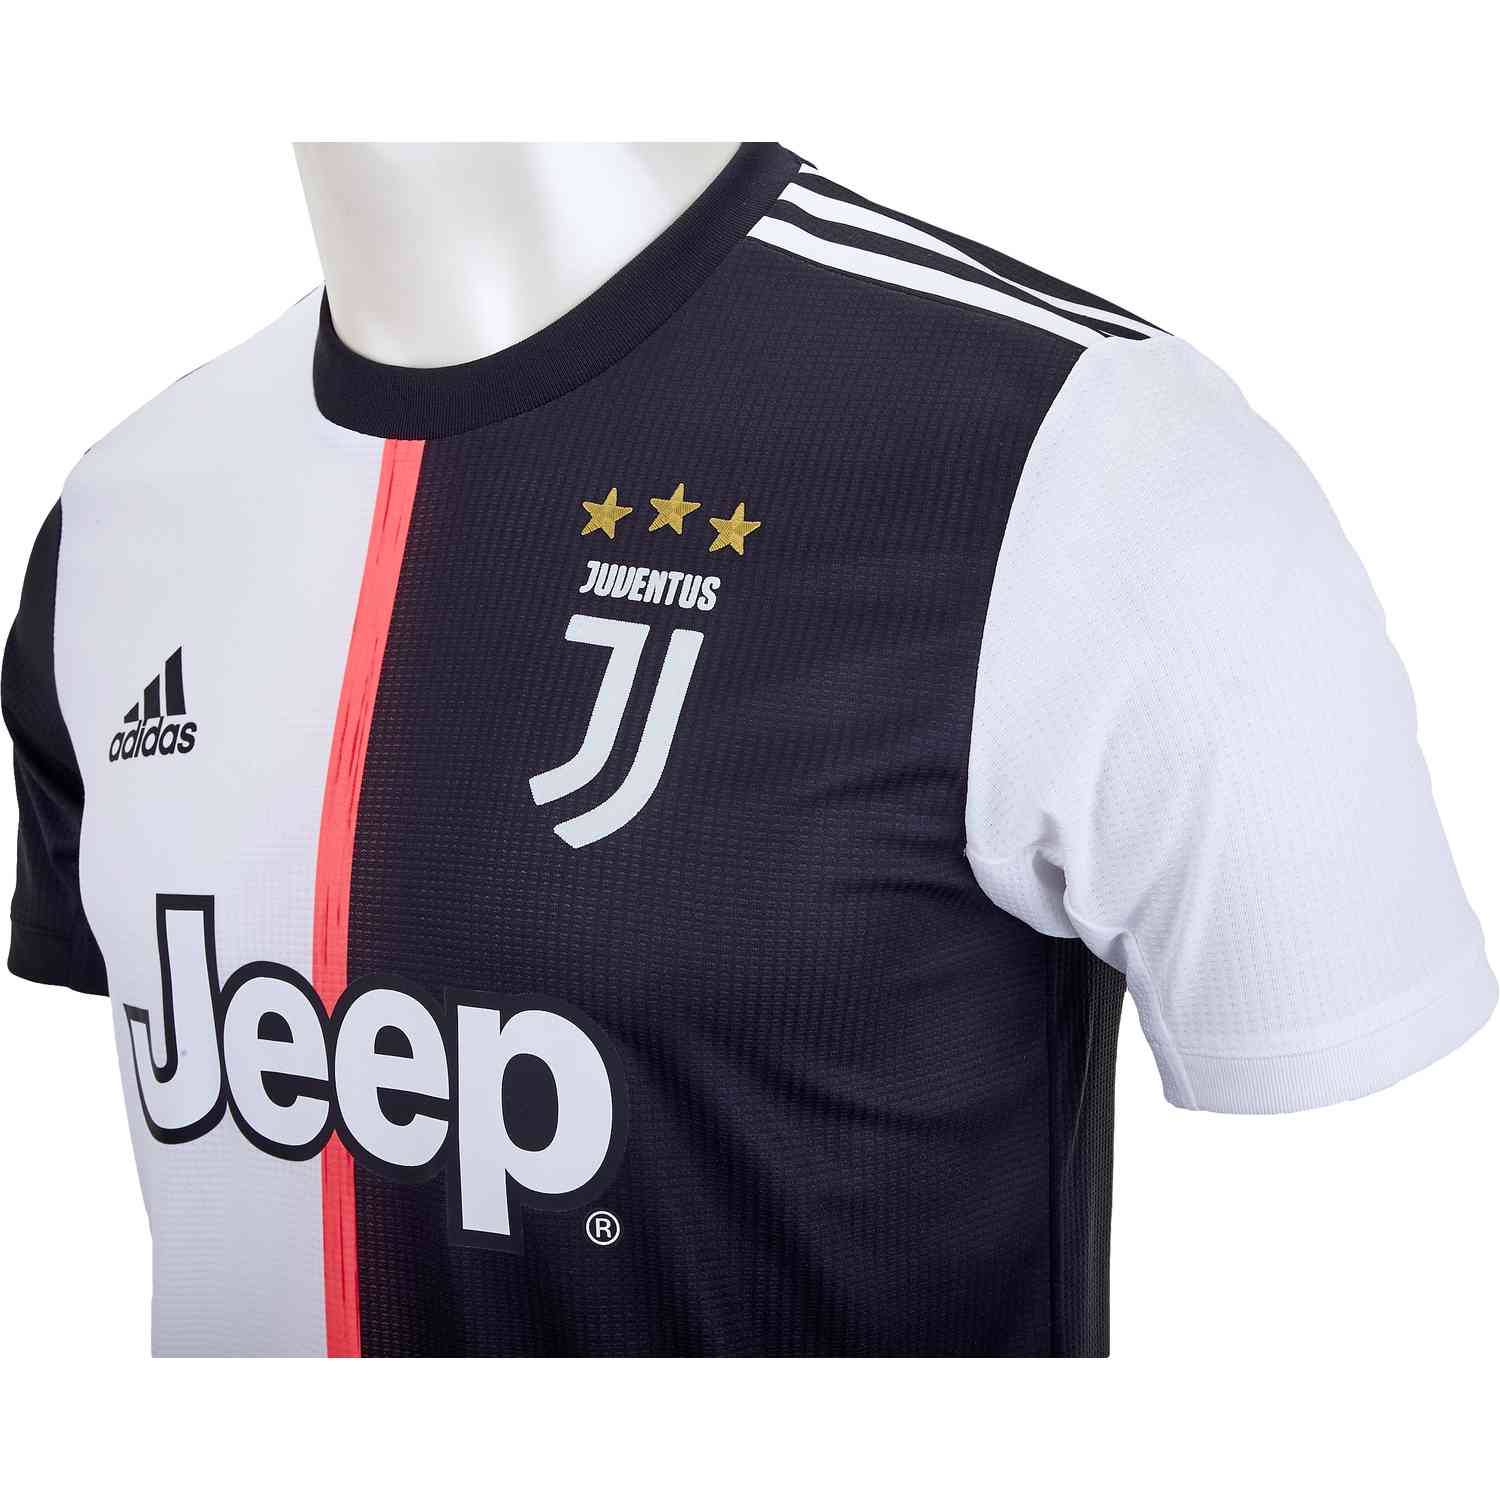 Regulación Pío saludo 2019/20 adidas Cristiano Ronaldo Juventus Home Authentic Jersey - SoccerPro